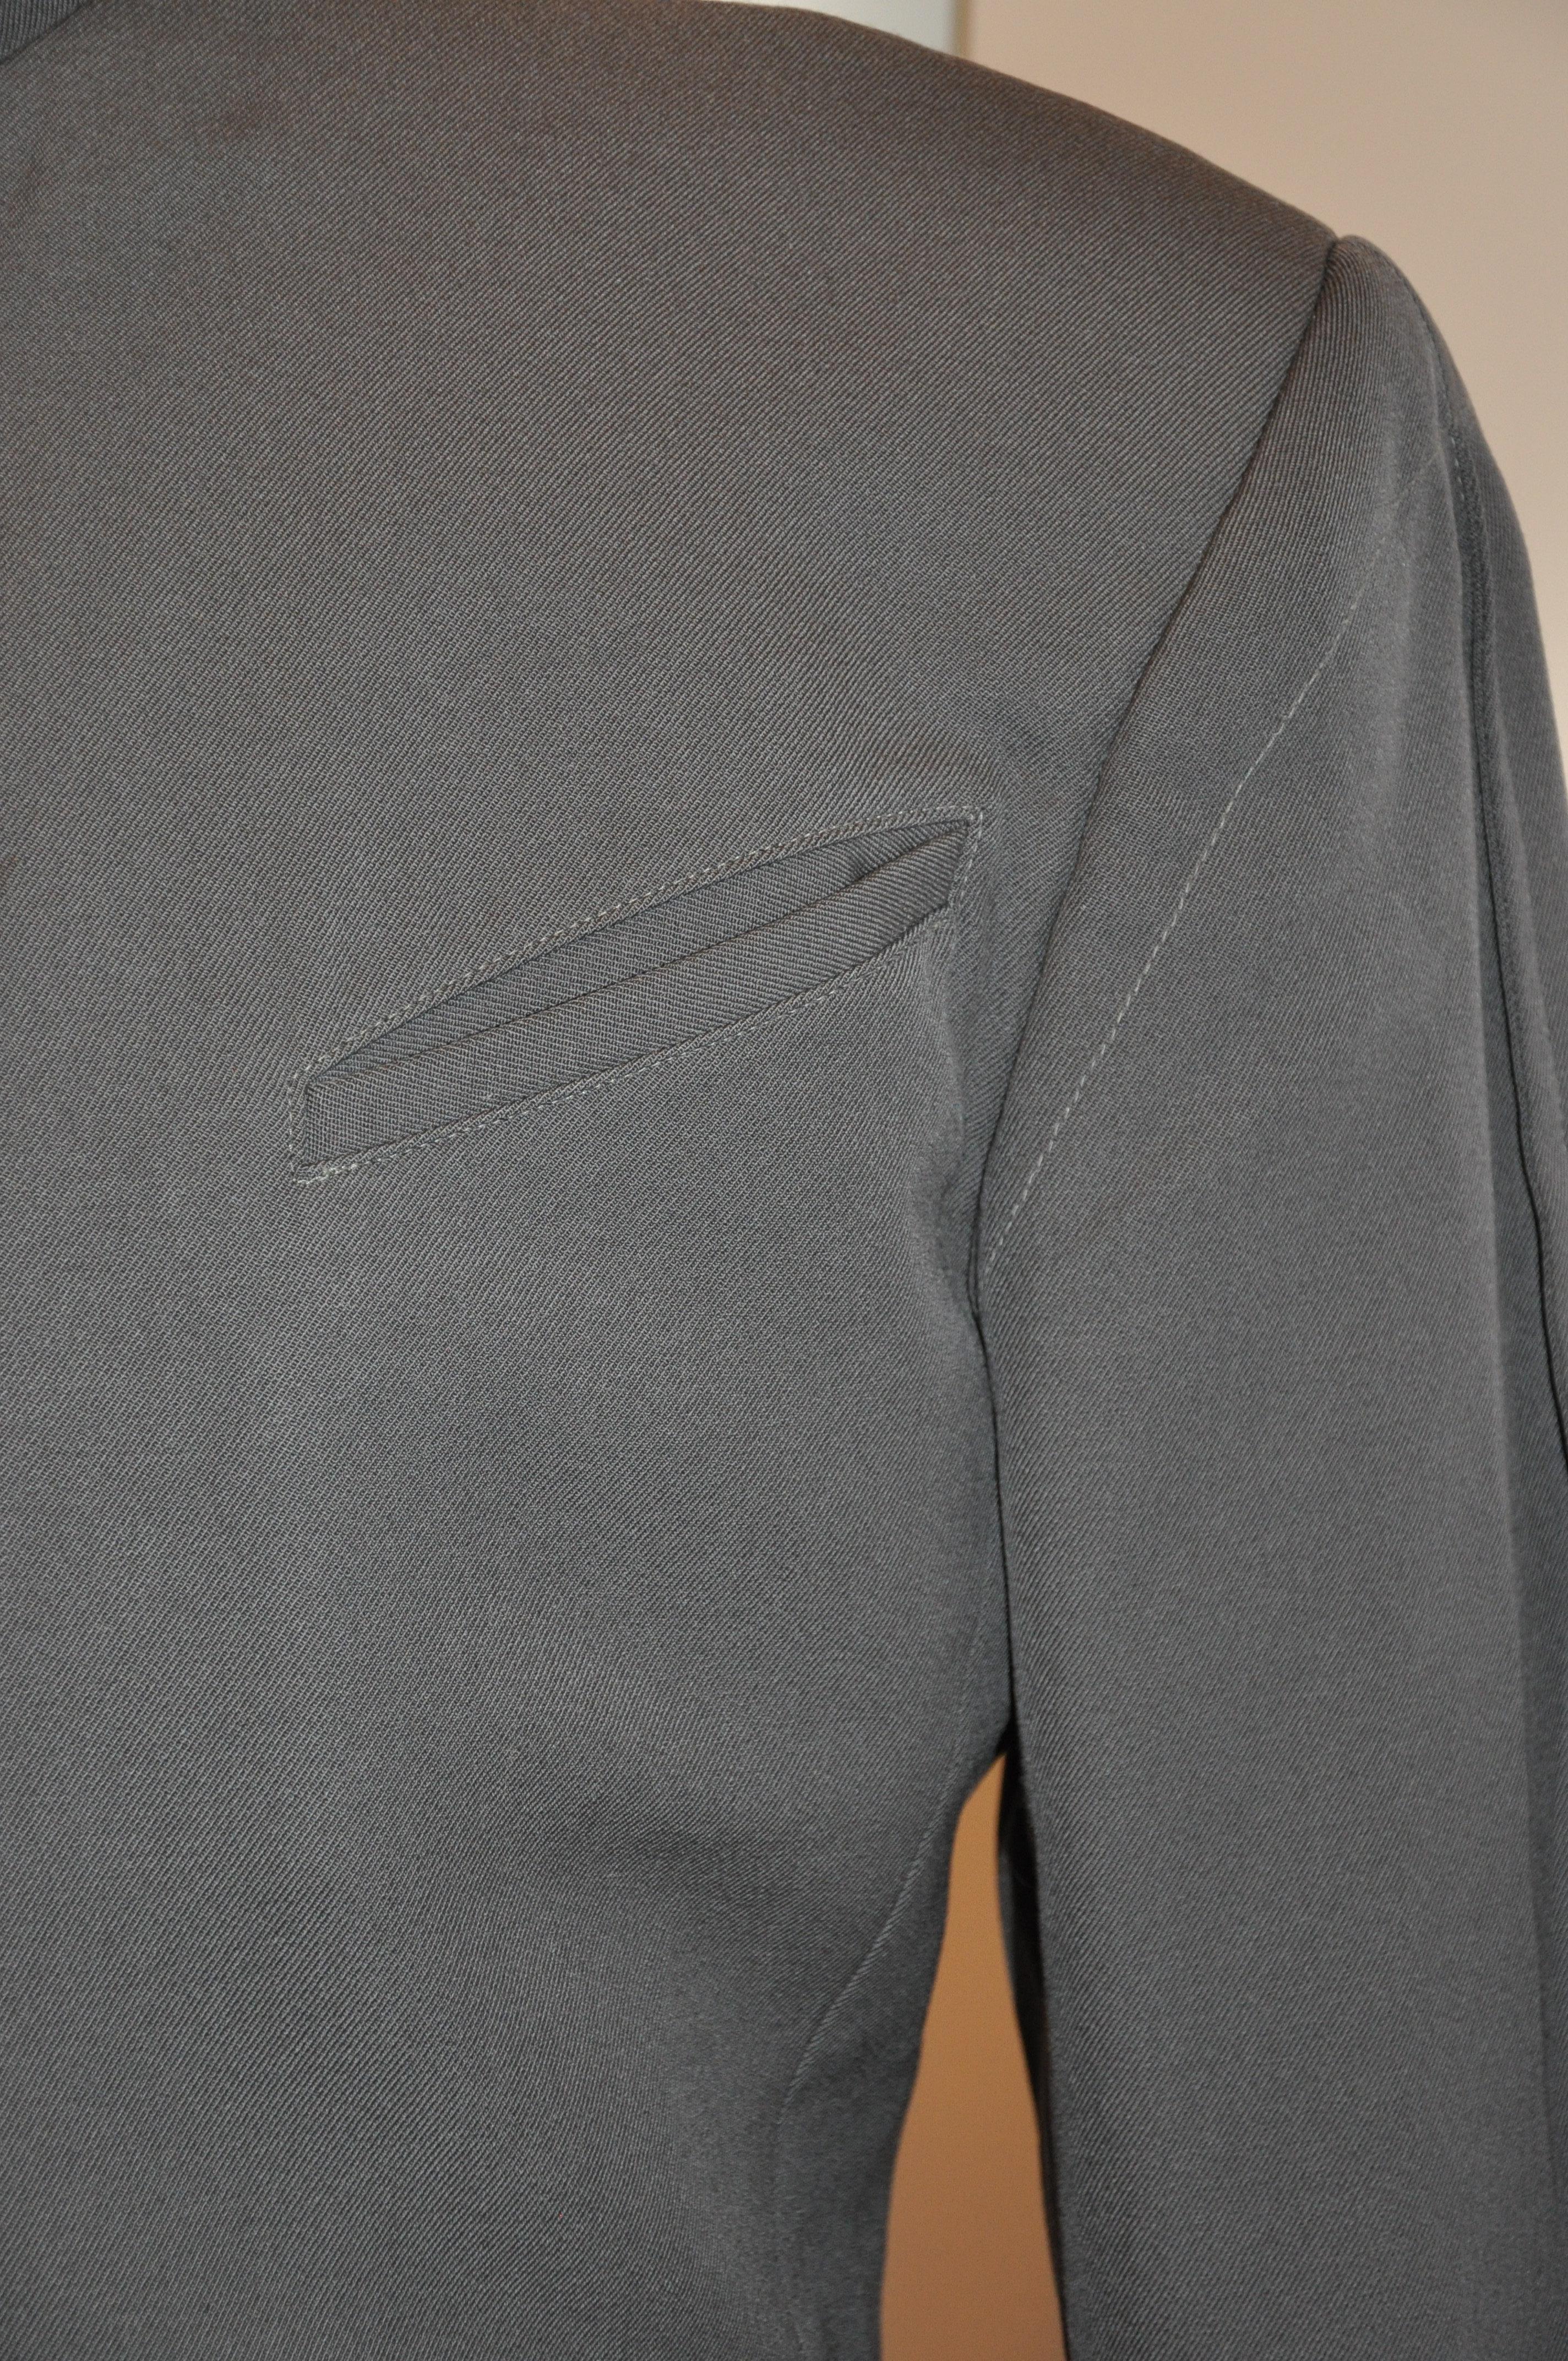        Thierry Mugler seltene ikonische Herrenjacke aus taupefarbener Wolle mit Druckknopfverschluss und Mandarinkragen. Die Vorderseite hat sechs (6) Druckknöpfe. Es gibt zwei aufgesetzte Taschen sowie zwei aufgesetzte Taschen im Innenbereich. Die